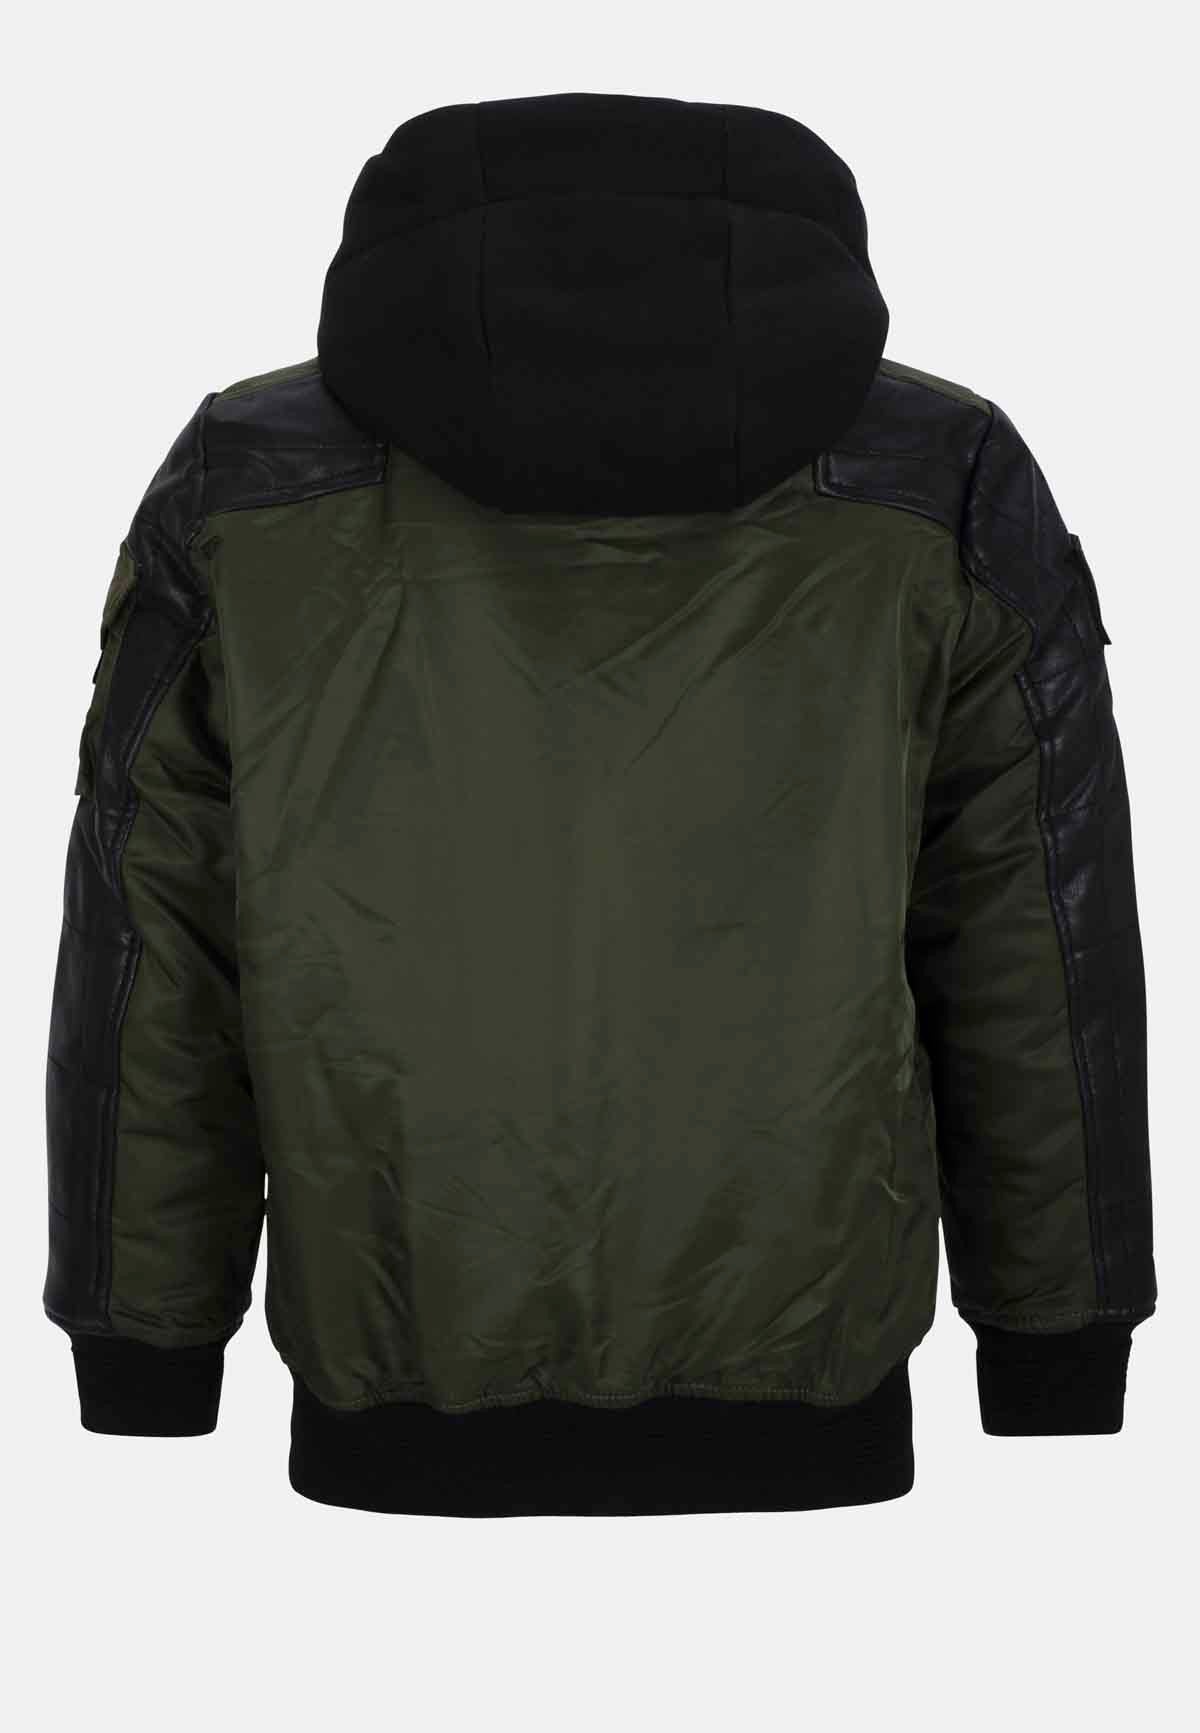 CMK101 Black Young Jacket